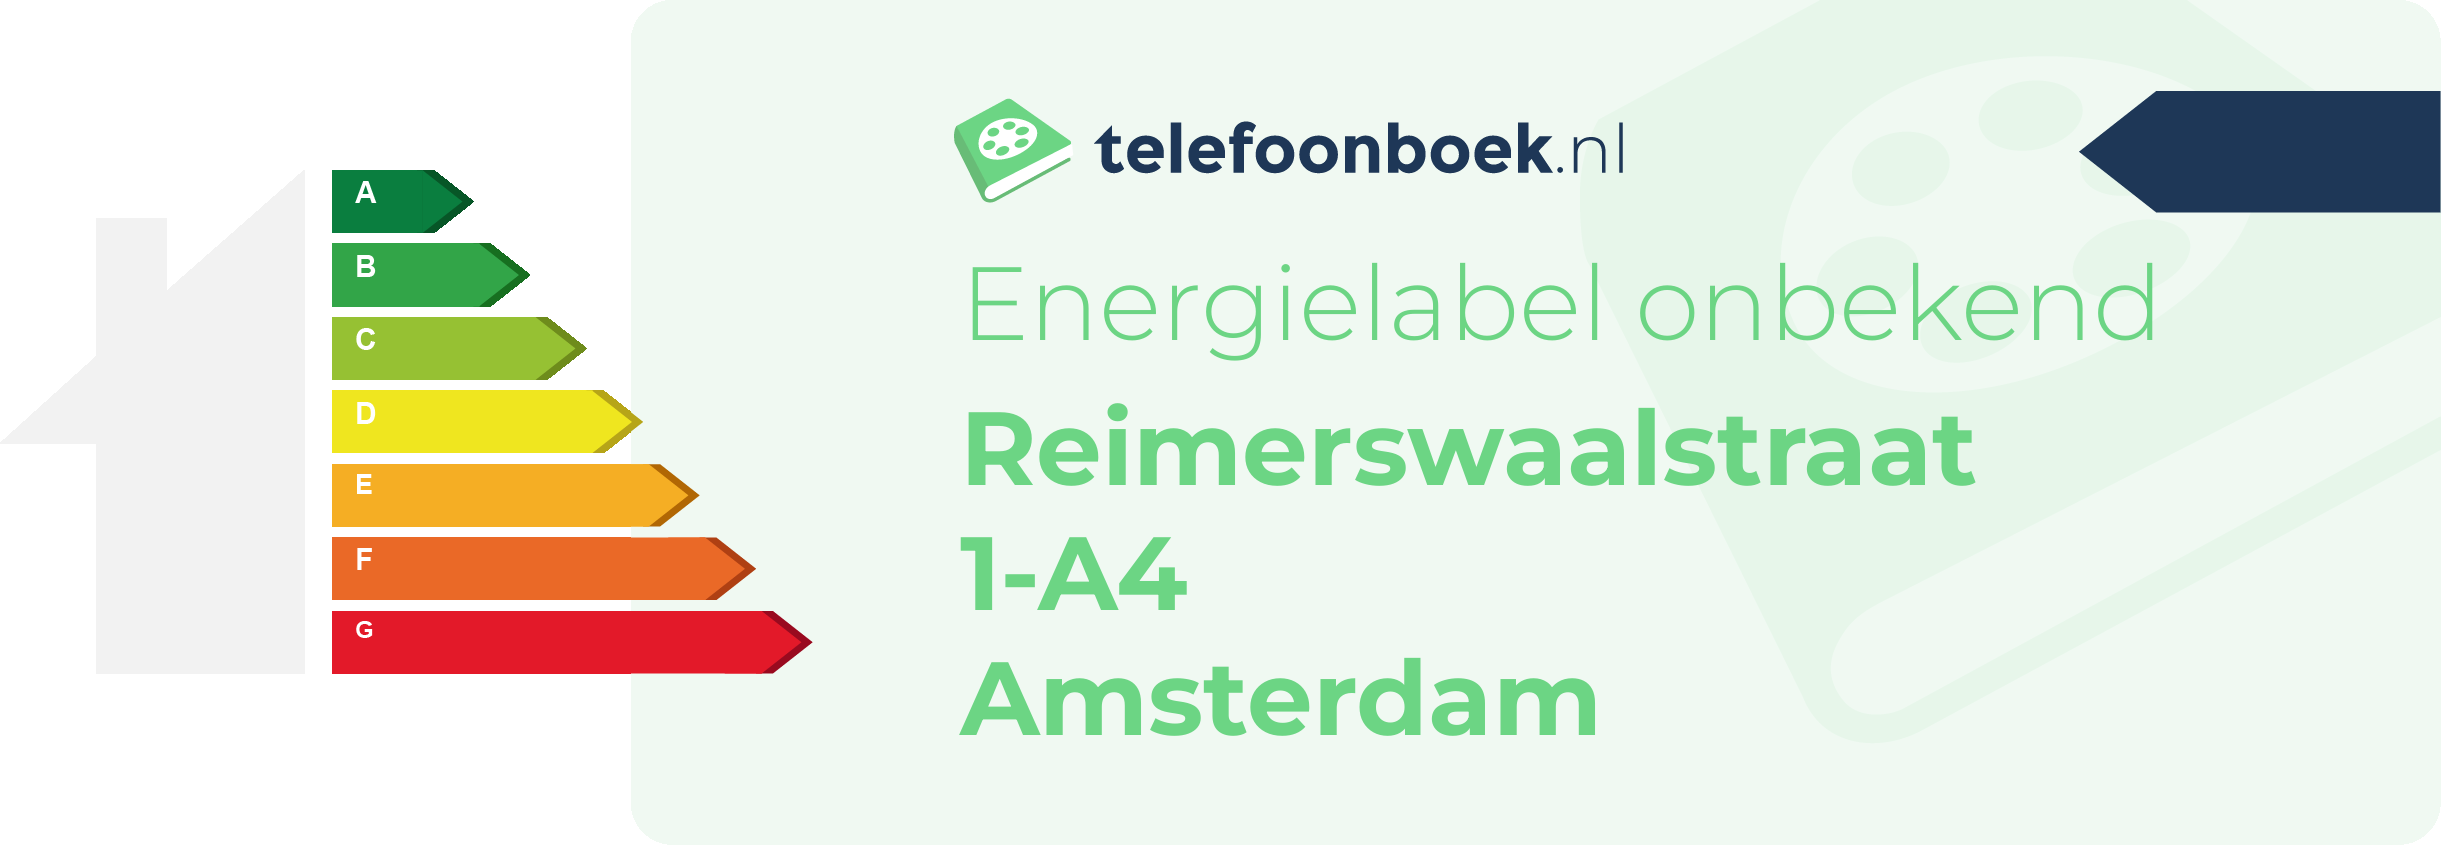 Energielabel Reimerswaalstraat 1-A4 Amsterdam